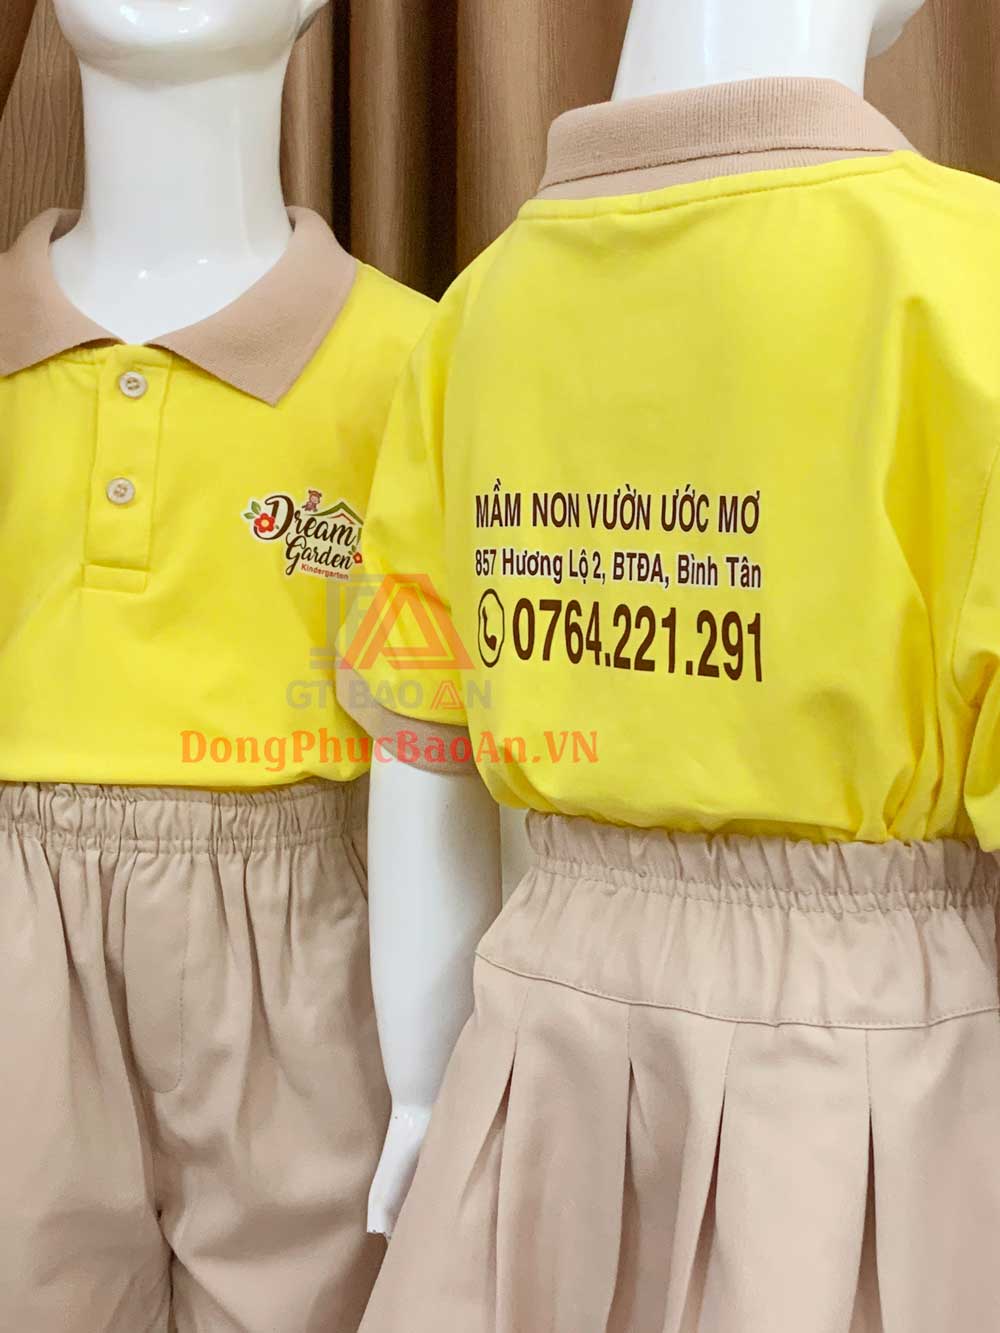 Xưởng may đồng phục mầm non TPHCM quận Bình Tân - Mẫu đồng phục Mầm Non Vườn Ước Mơ